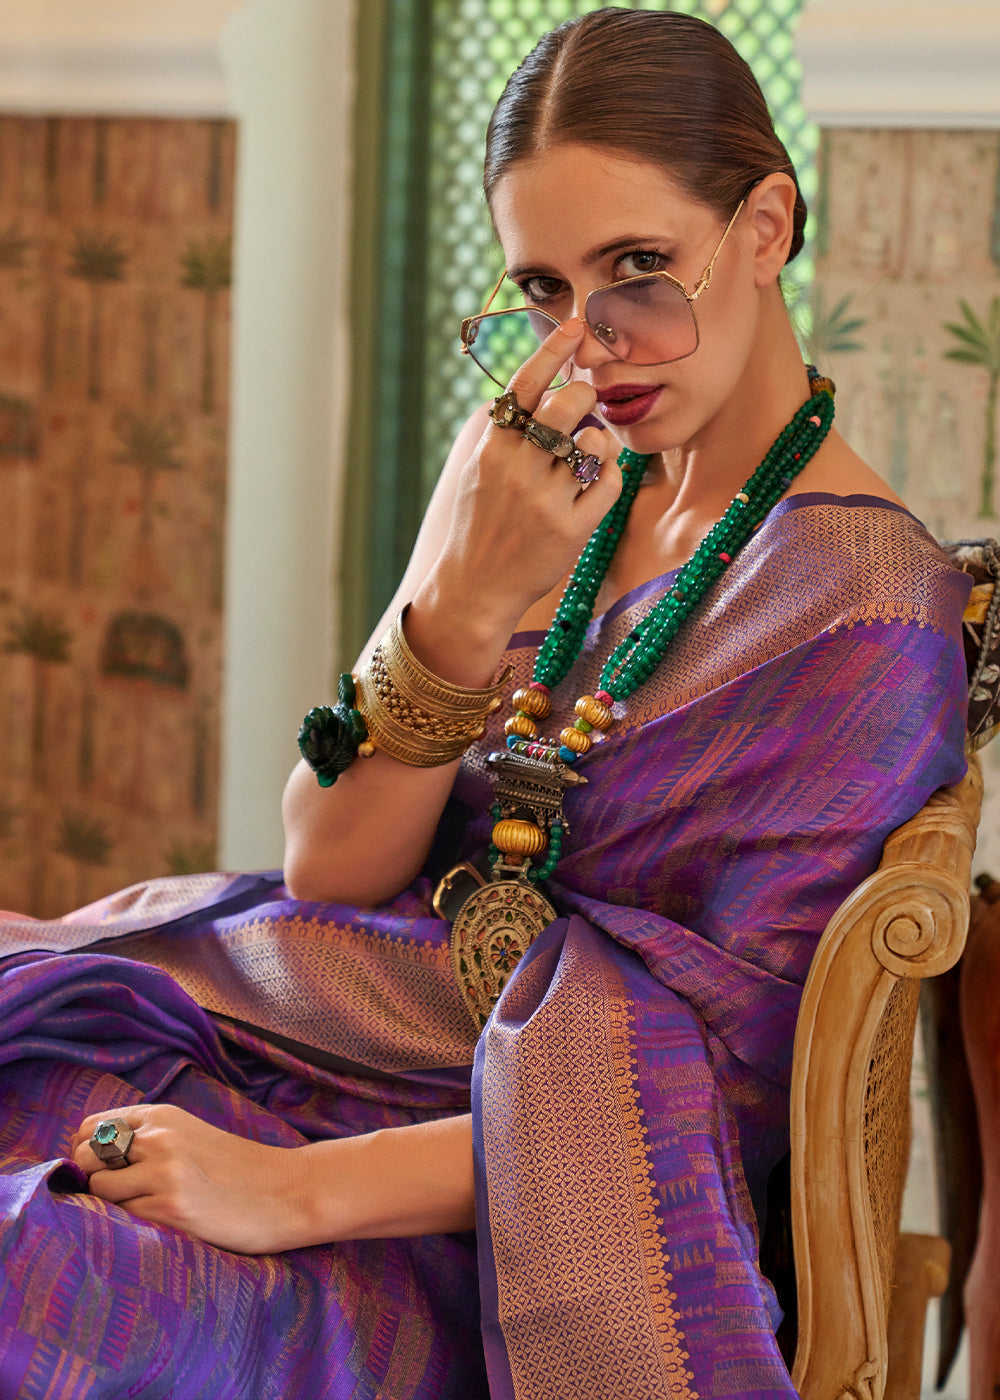 Indigo Purple Two Tone Handloom Weaving Organza Silk Saree : Top Pick